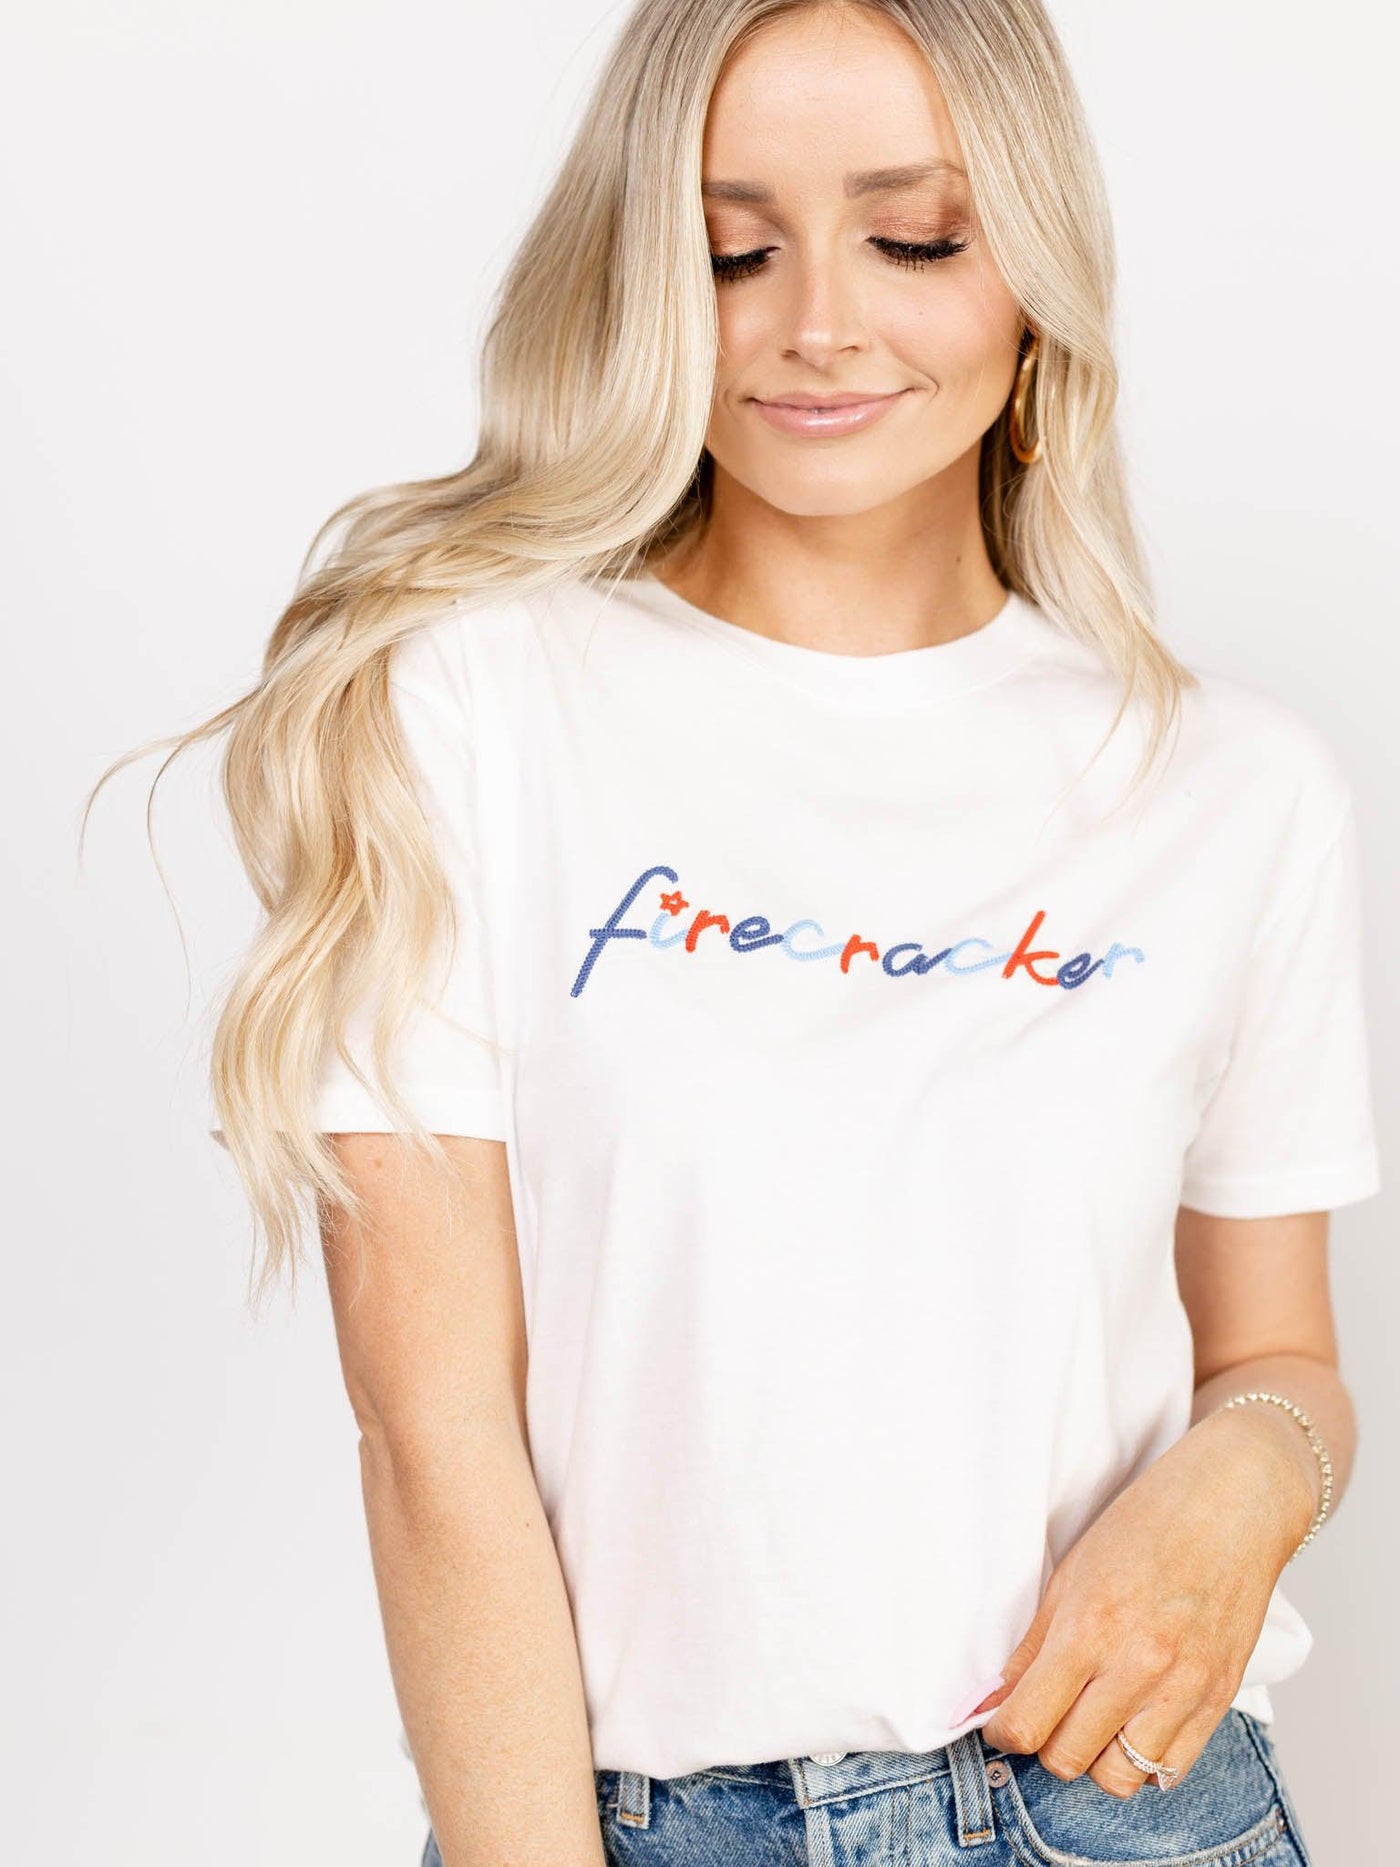 firecracker shirt